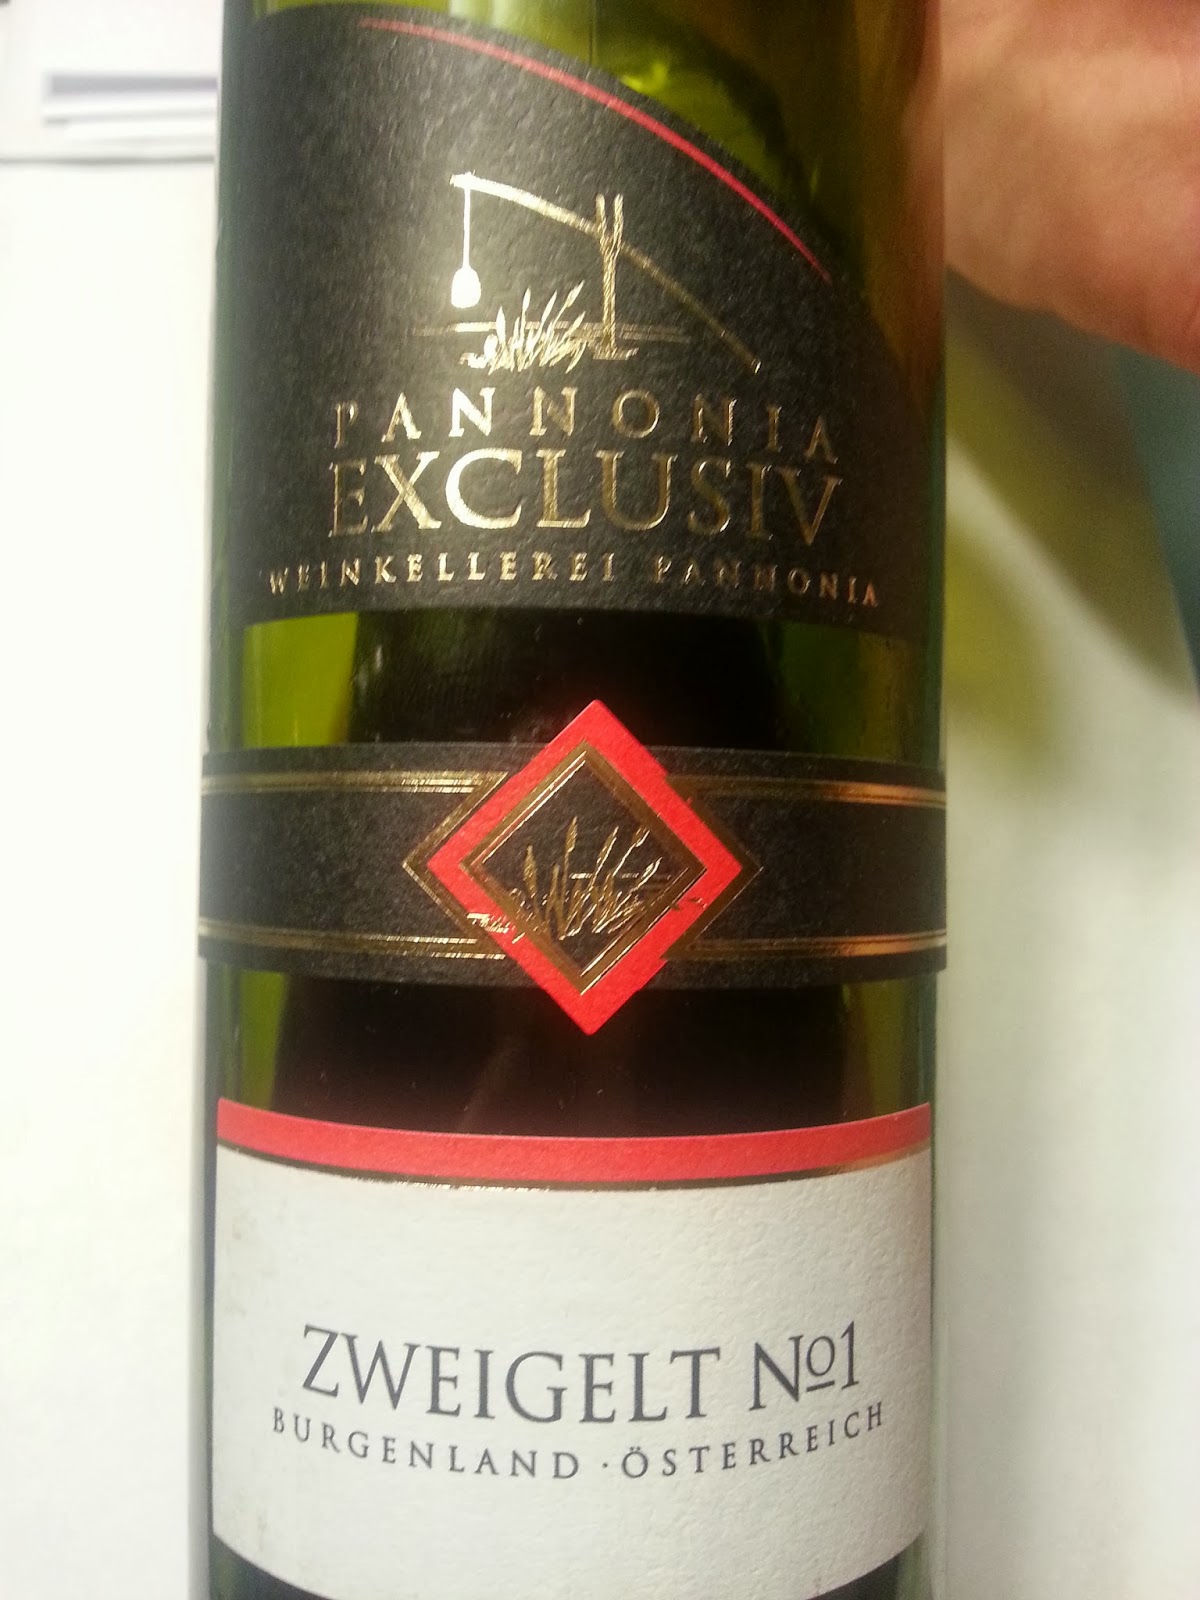 My Wine: Weinkellerei Pannonia Exclusive Zweigelt No.1 2012